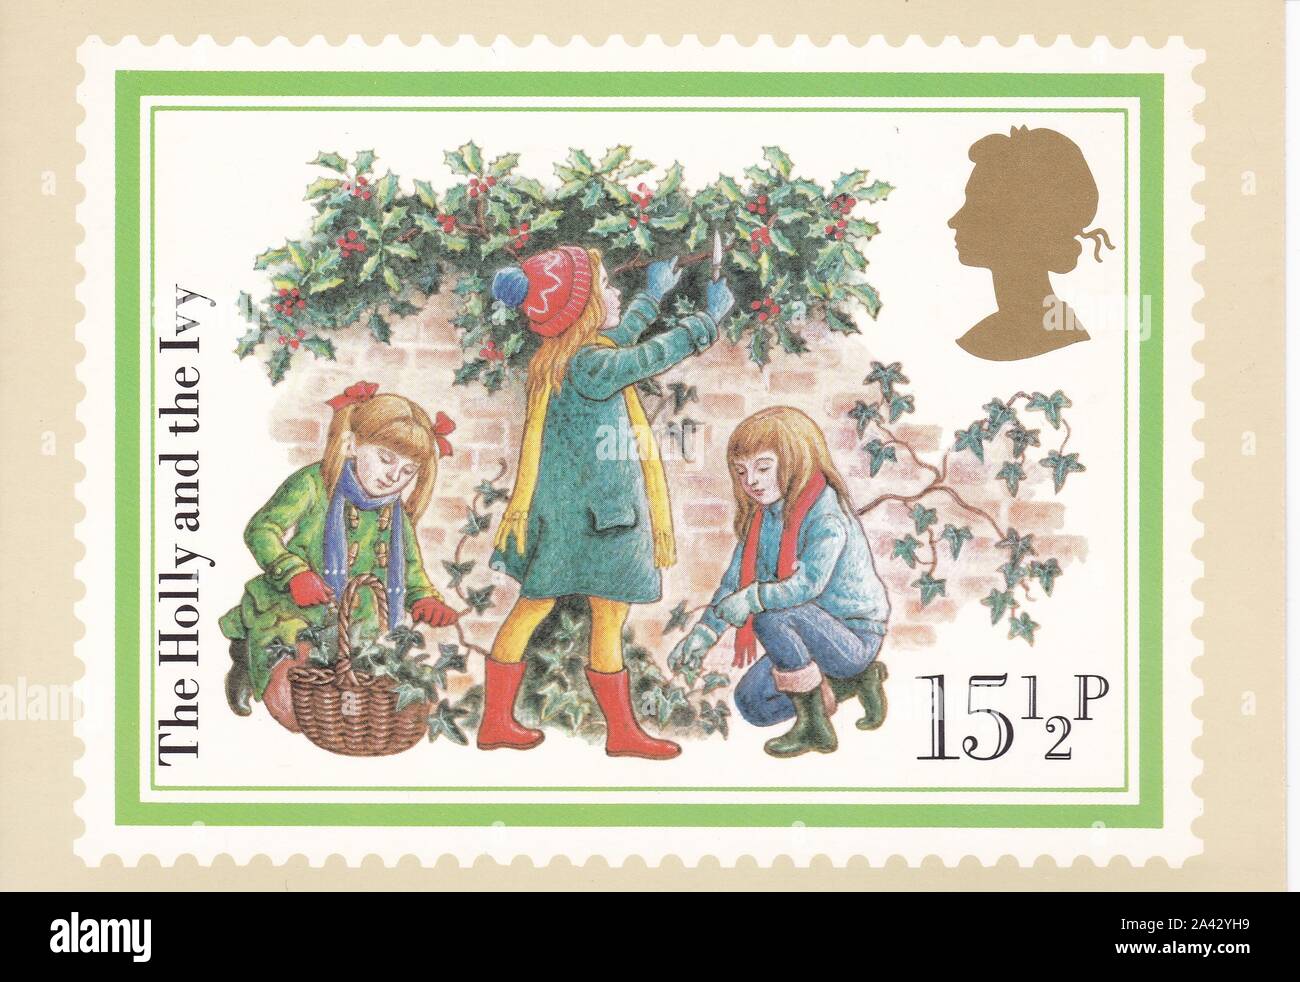 Farbe Royal Mail Postkarte von 15,5 p Stempel der Holly und die Ivy - Weihnachten 1982. Stockfoto